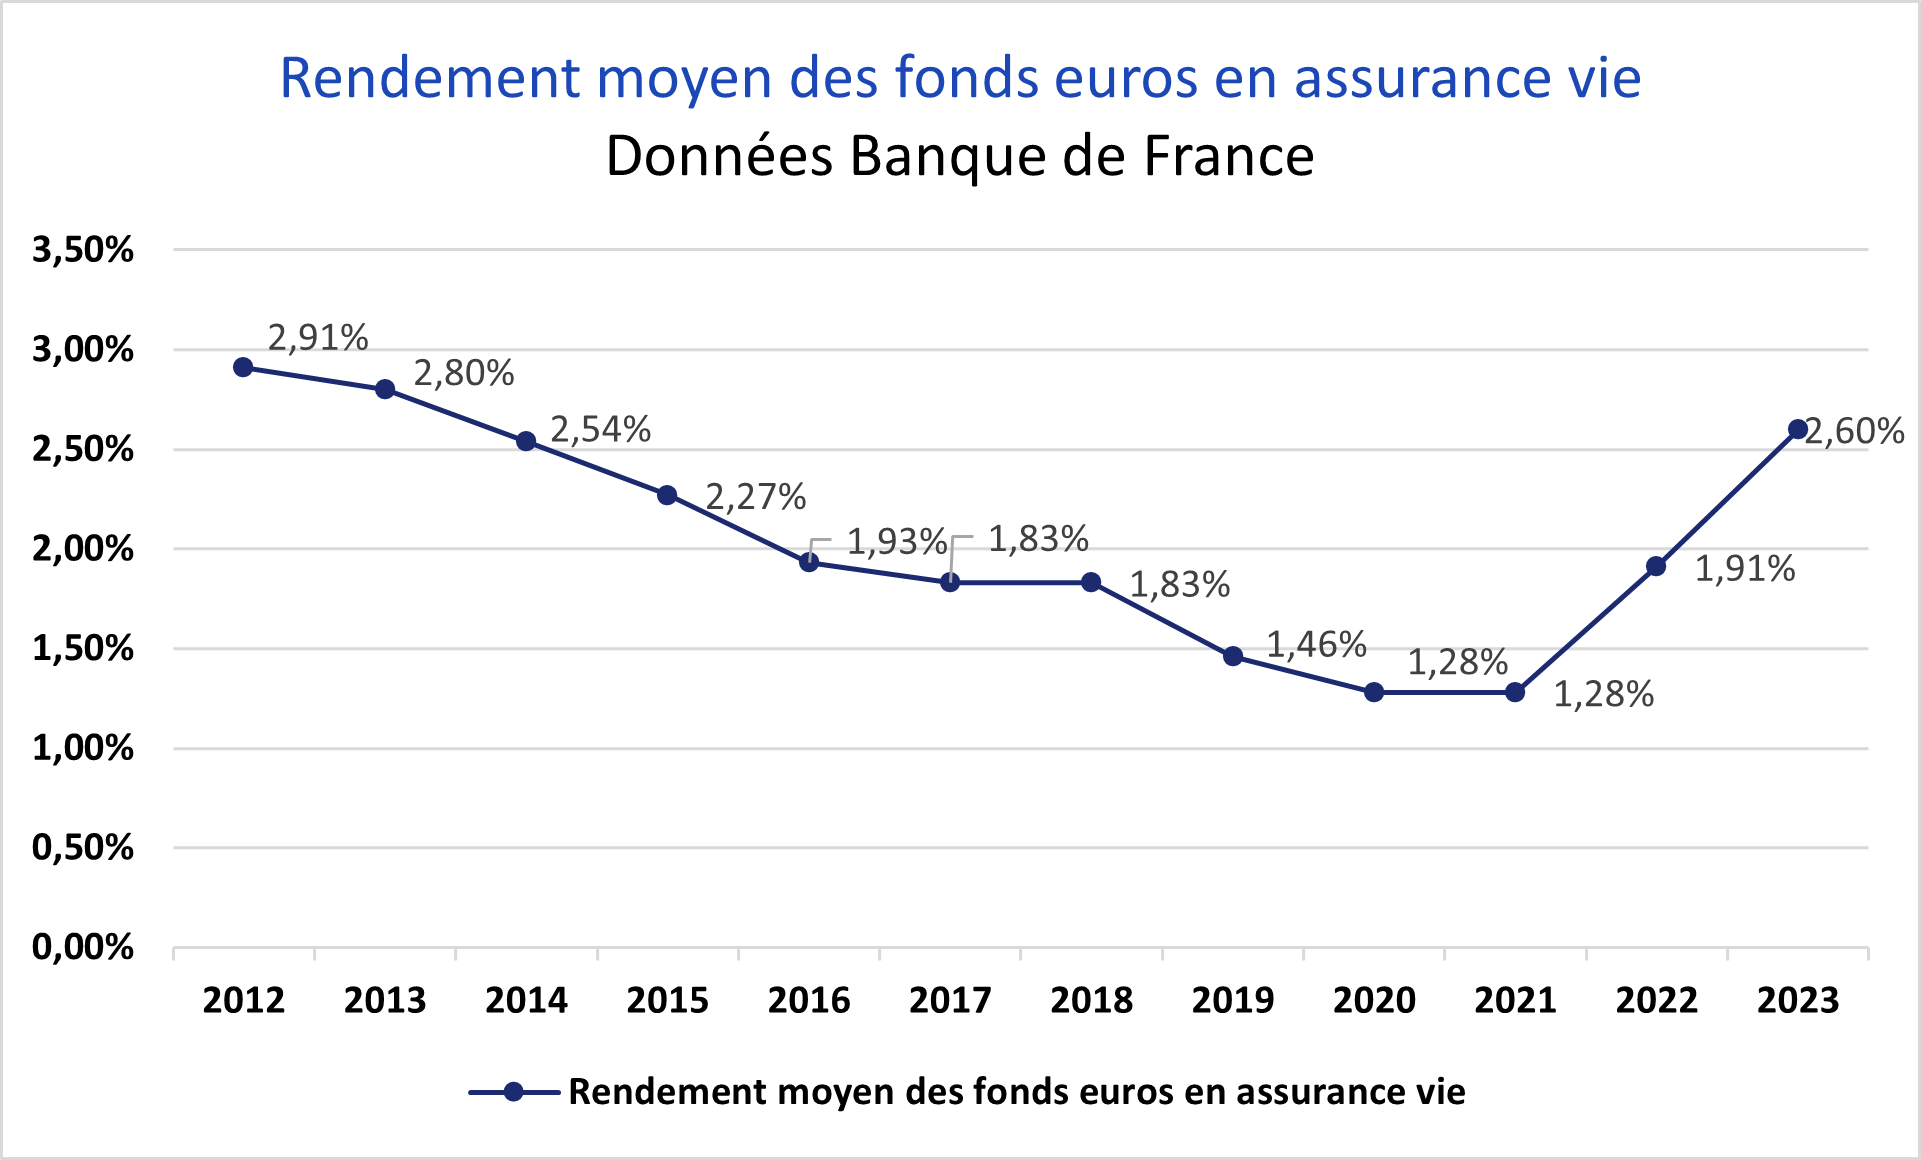 Fonds euros en assurance vie rendement moyen